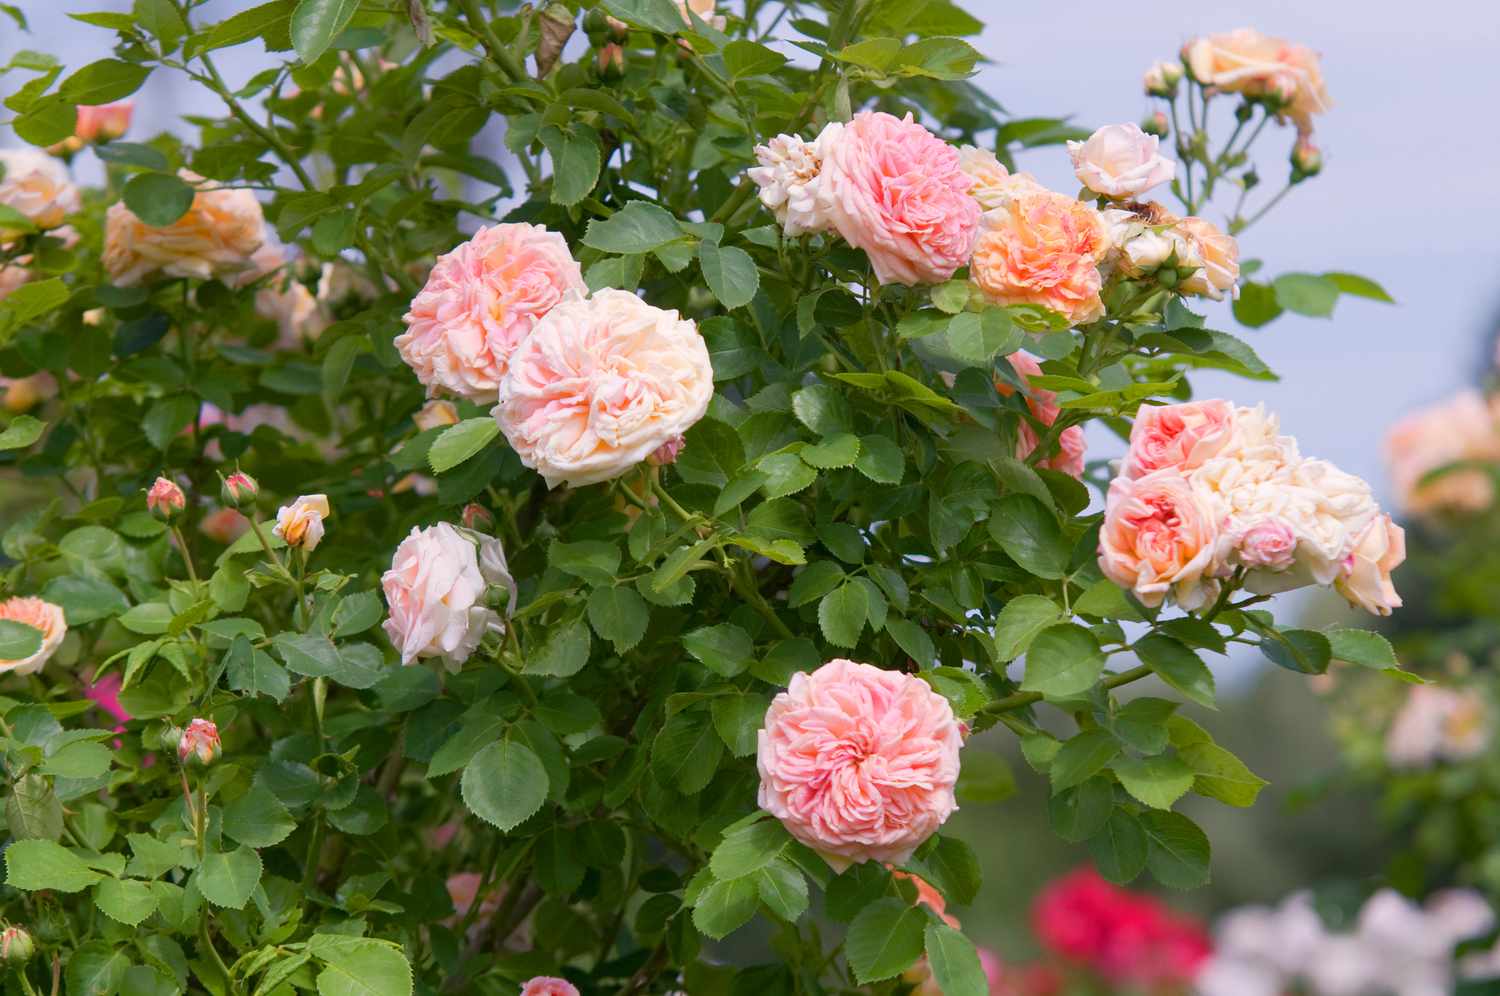 Rosen-Alchymist-Strauch mit kletternden hellrosa Blüten im Garten